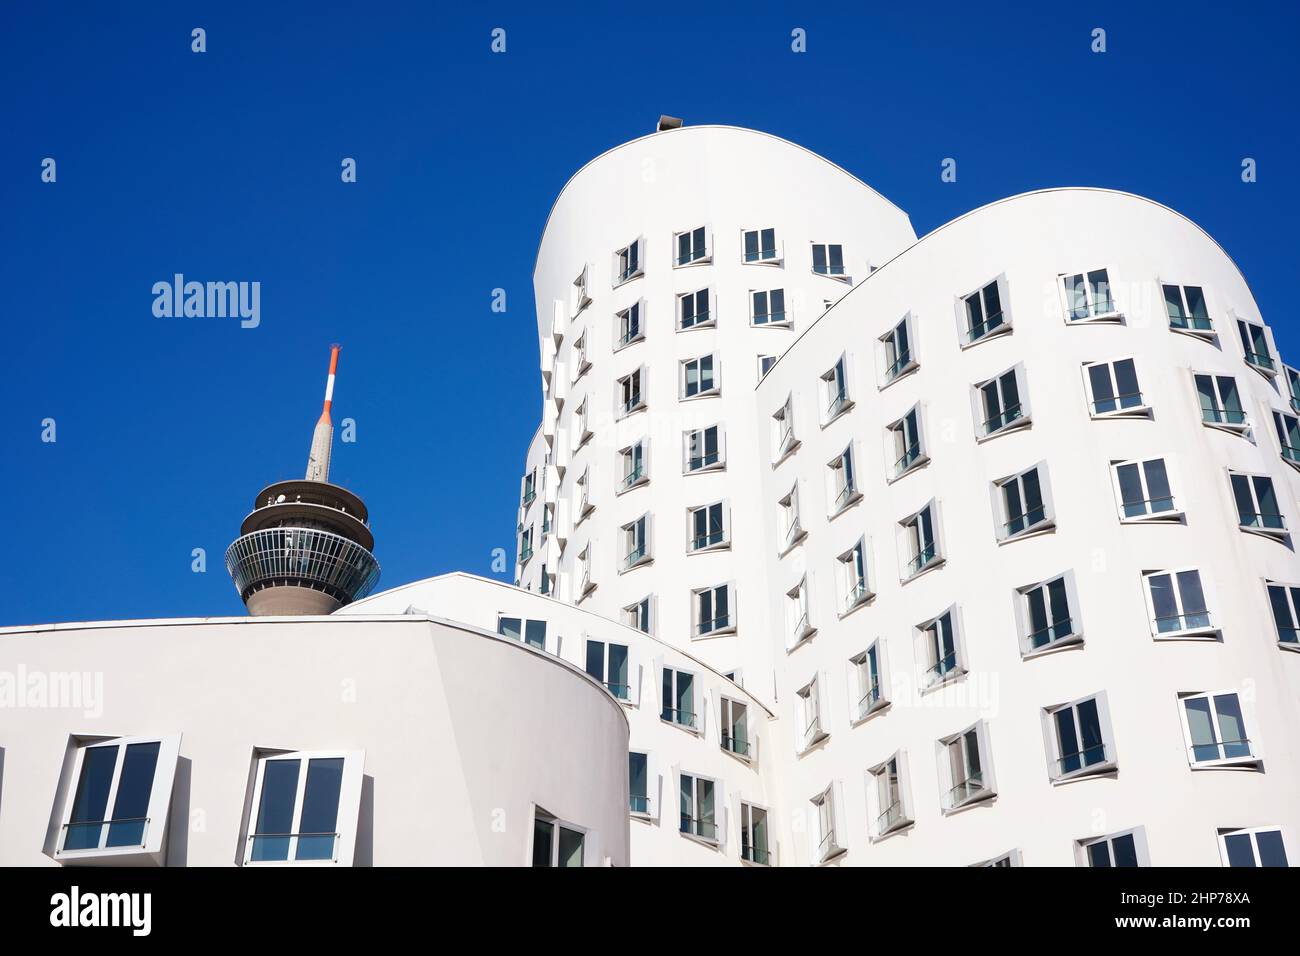 Weiße Gebäude des Stararchitekten Frank O. Gehry im Neuen Zollhof, Medienhafen, mit Rheinturm im Hintergrund. Stockfoto